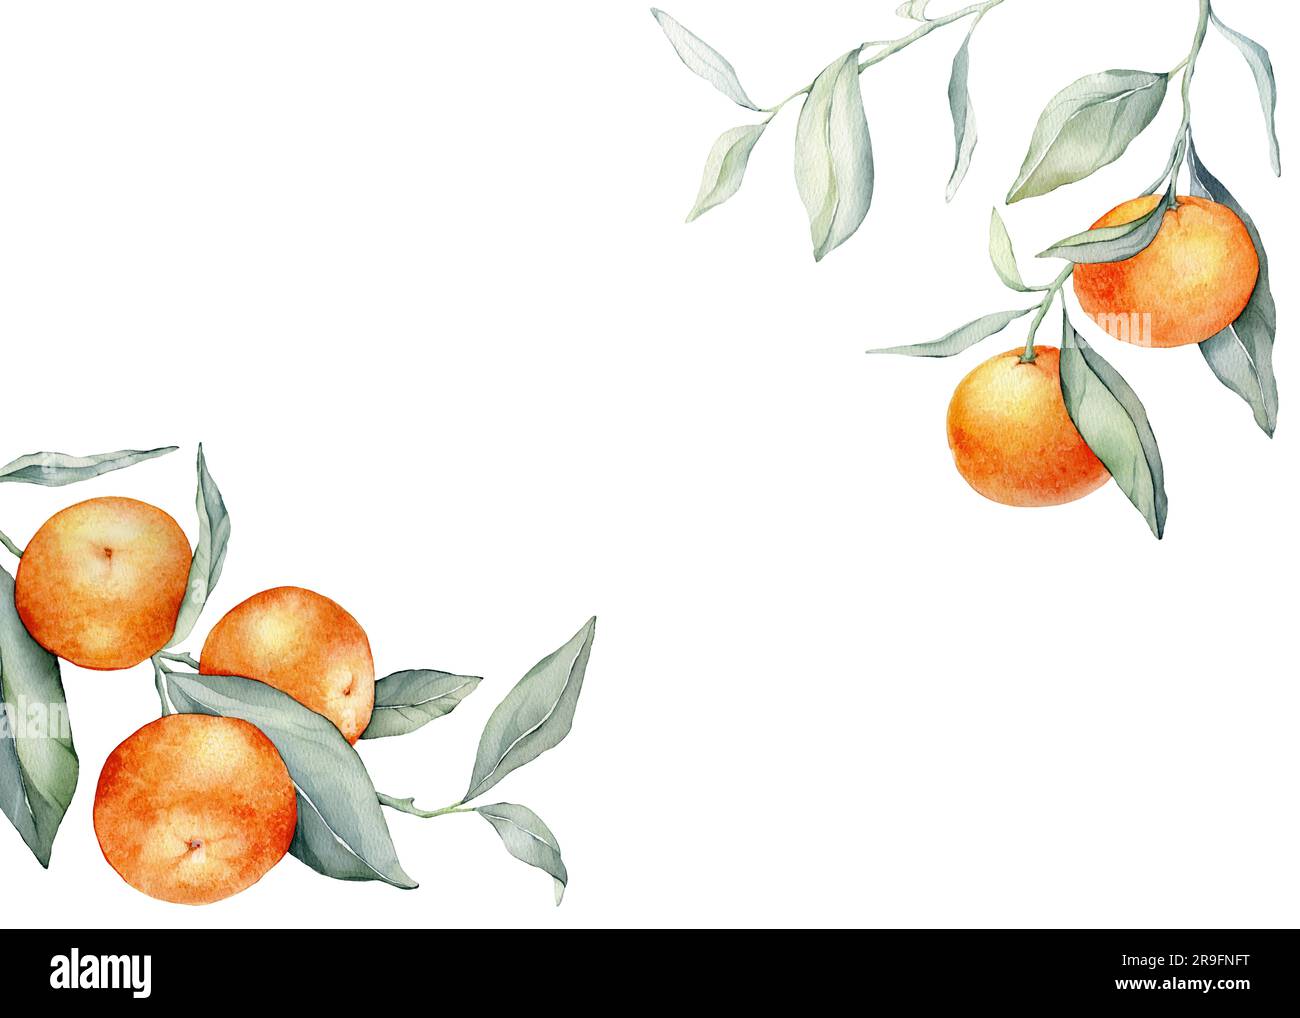 Cadre avec fruits orange. Illustration aquarelle dessinée à la main de cadre carré avec des agrumes et des feuilles vertes sur un fond isolé. Bordure avec Banque D'Images